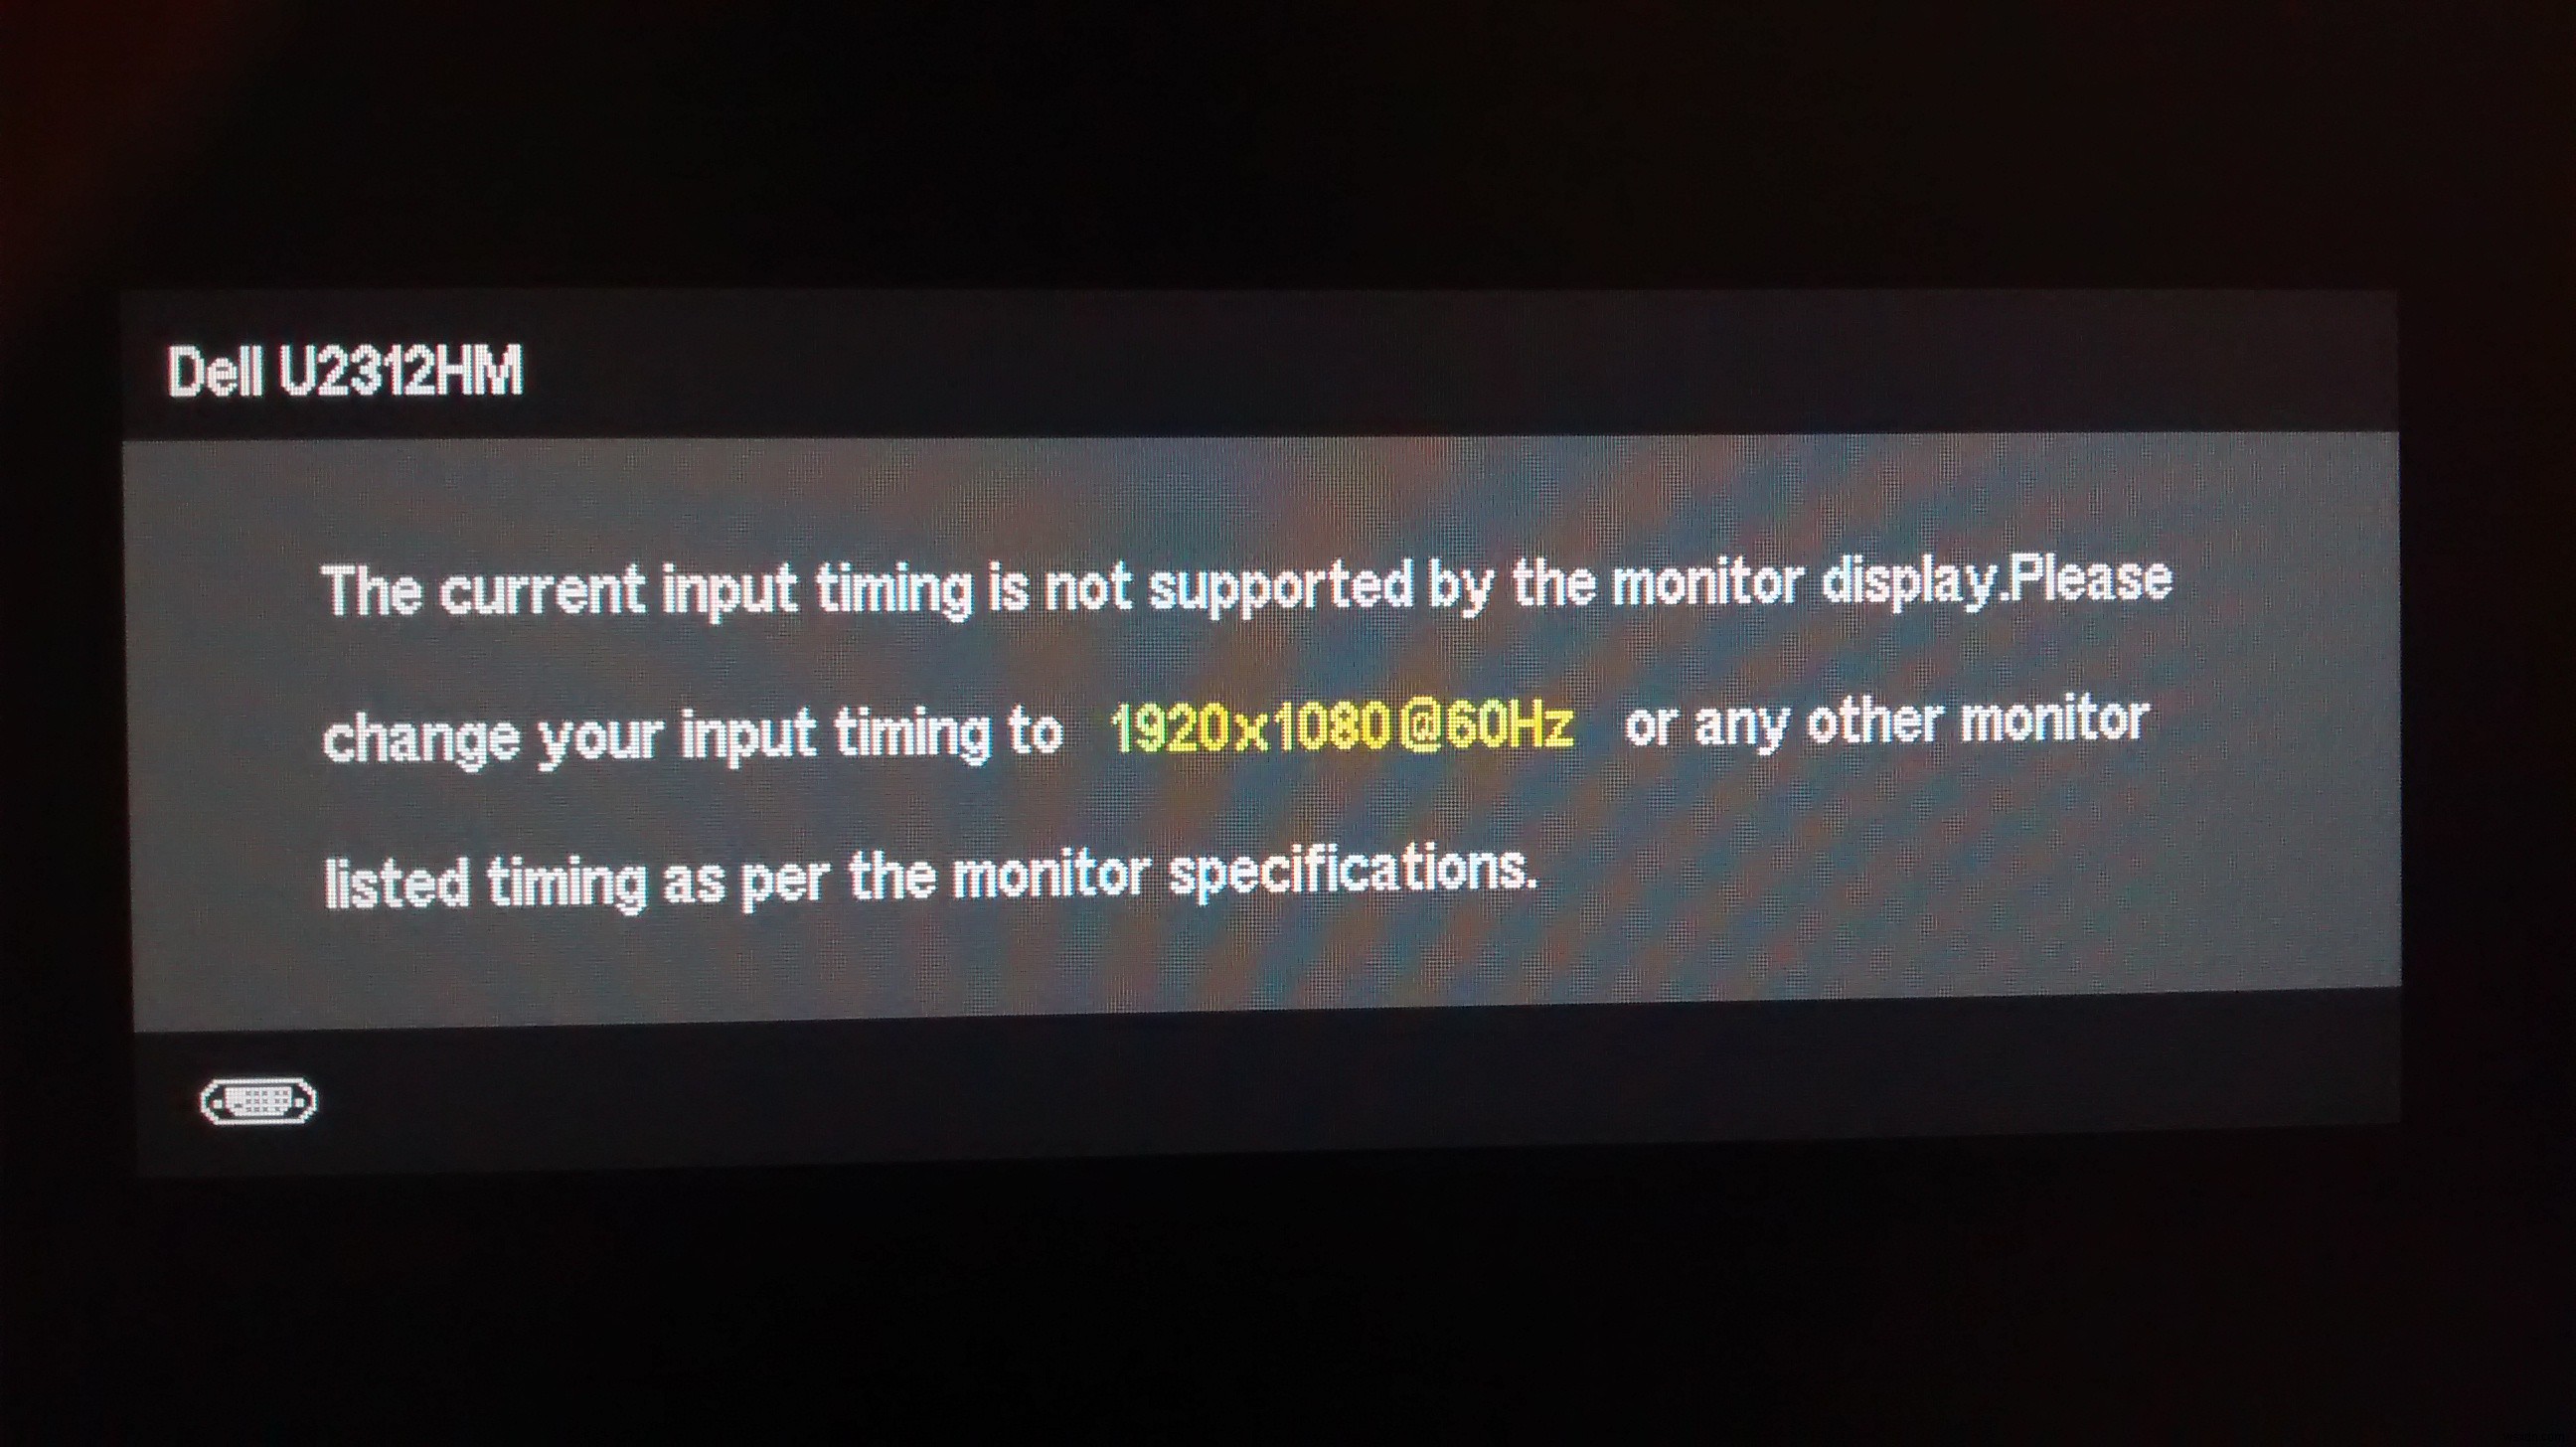 फिक्स:वर्तमान इनपुट समय मॉनिटर डिस्प्ले द्वारा समर्थित नहीं है 